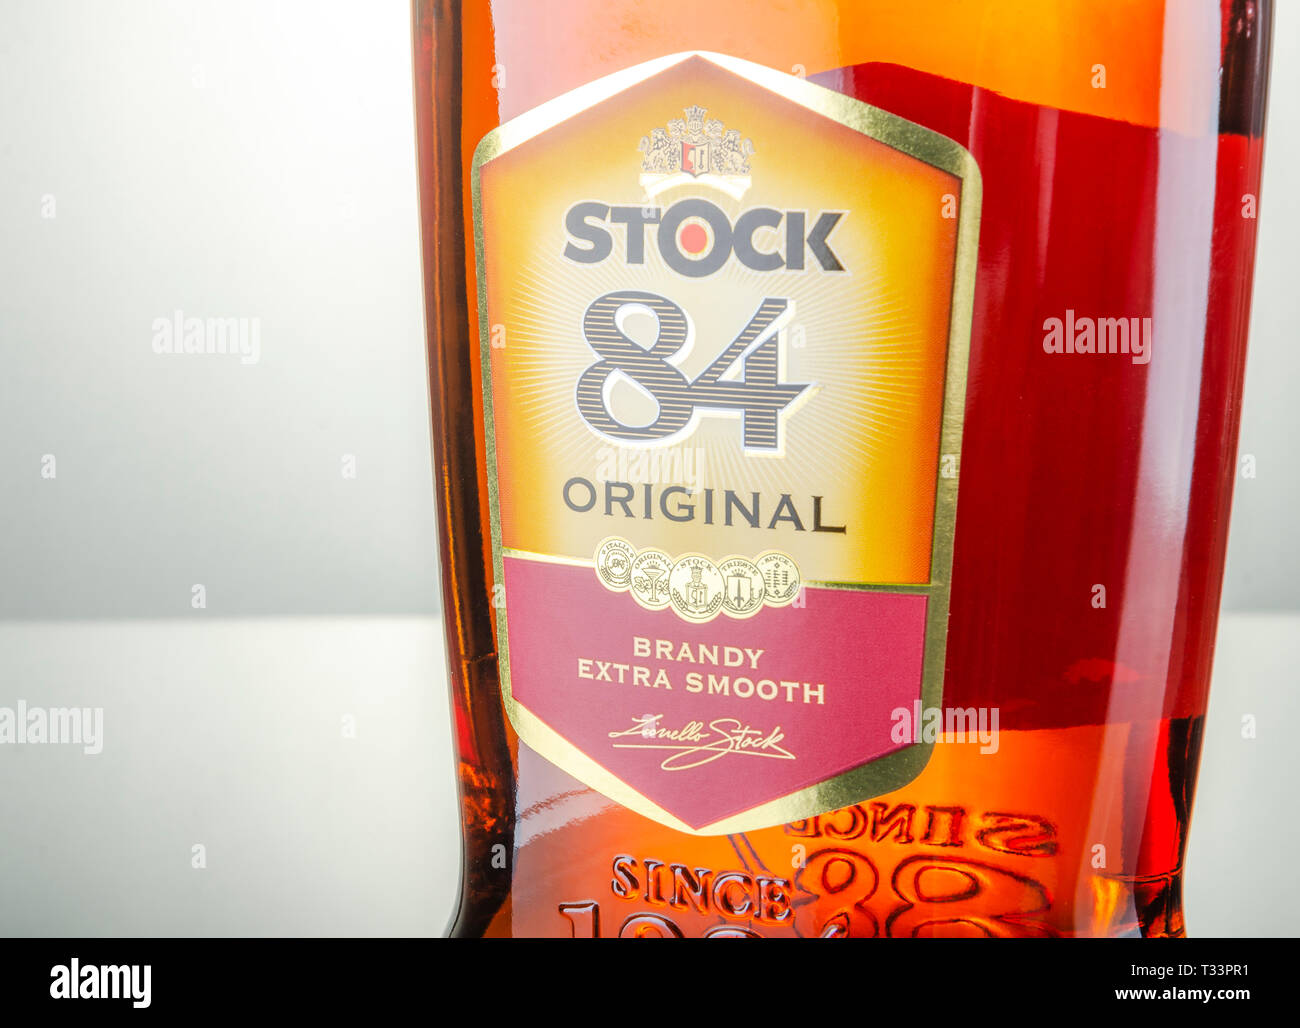 Bottiglia di brandy originale Stock 84 Foto stock - Alamy